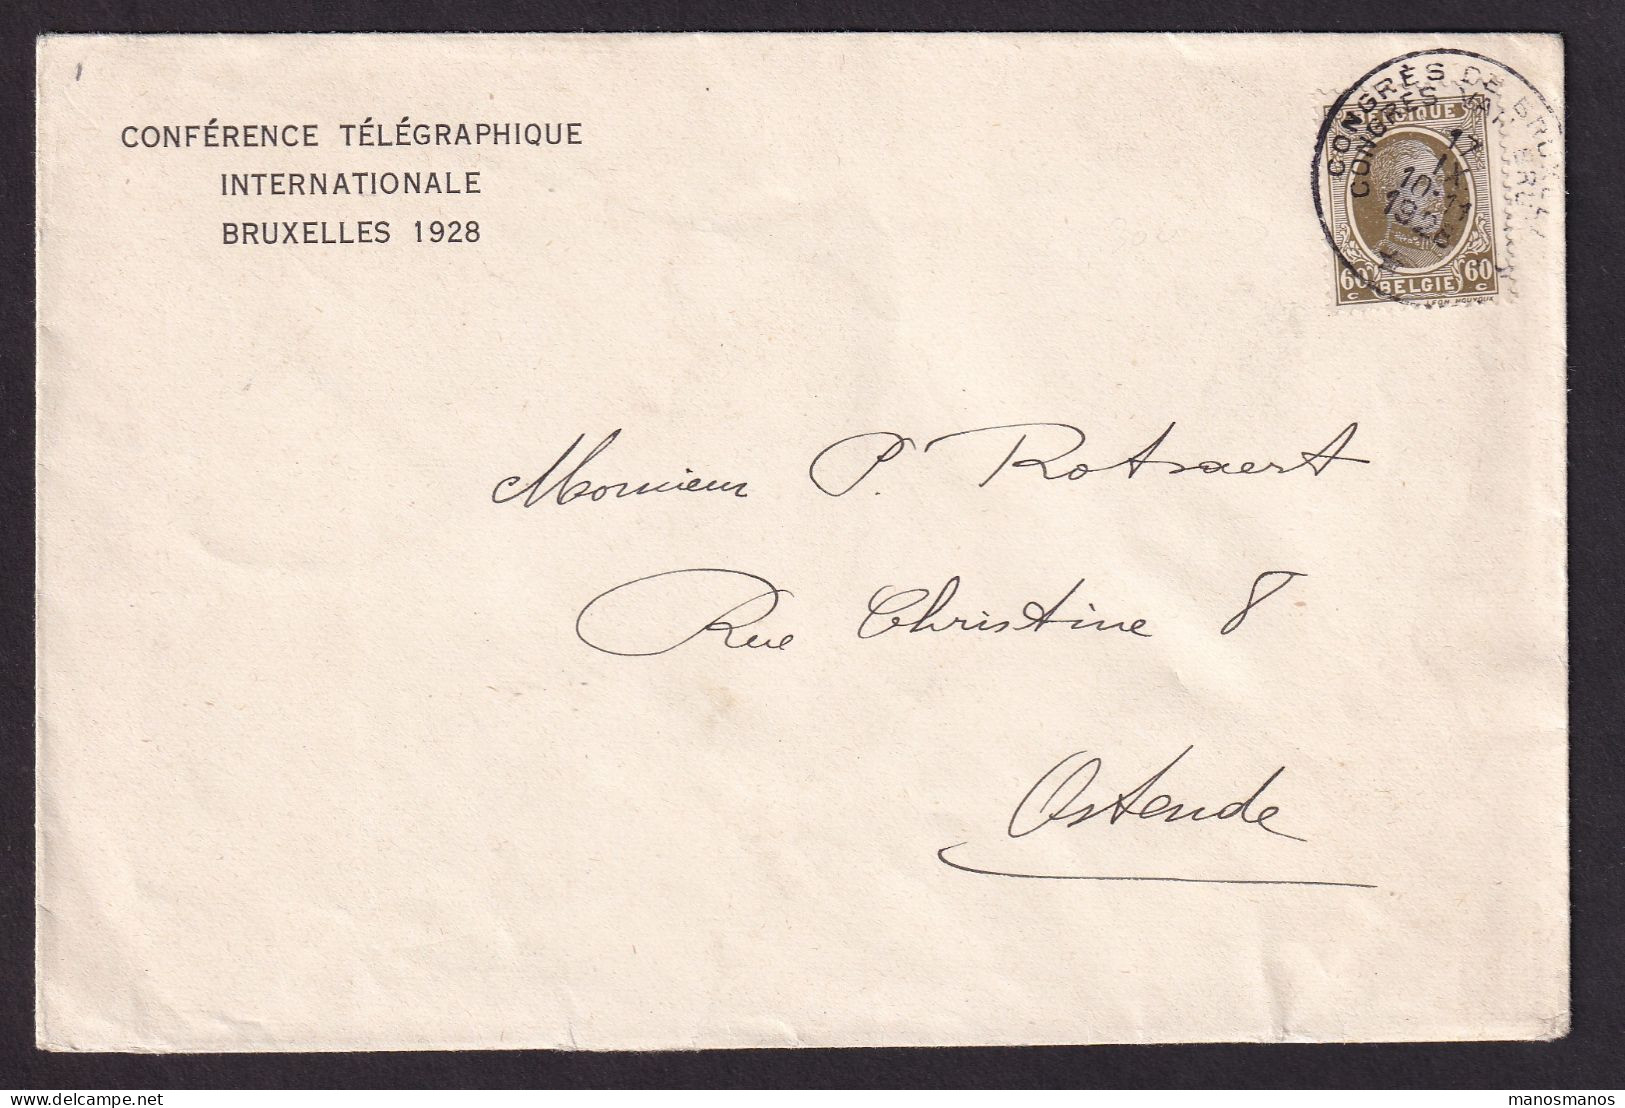 DDEE 848 -- Enveloppe Entete Conférence Télégraphique Internationale BRUXELLES 1928 - TP Houyoux Cachet Du Congrès RRR - Télégrammes